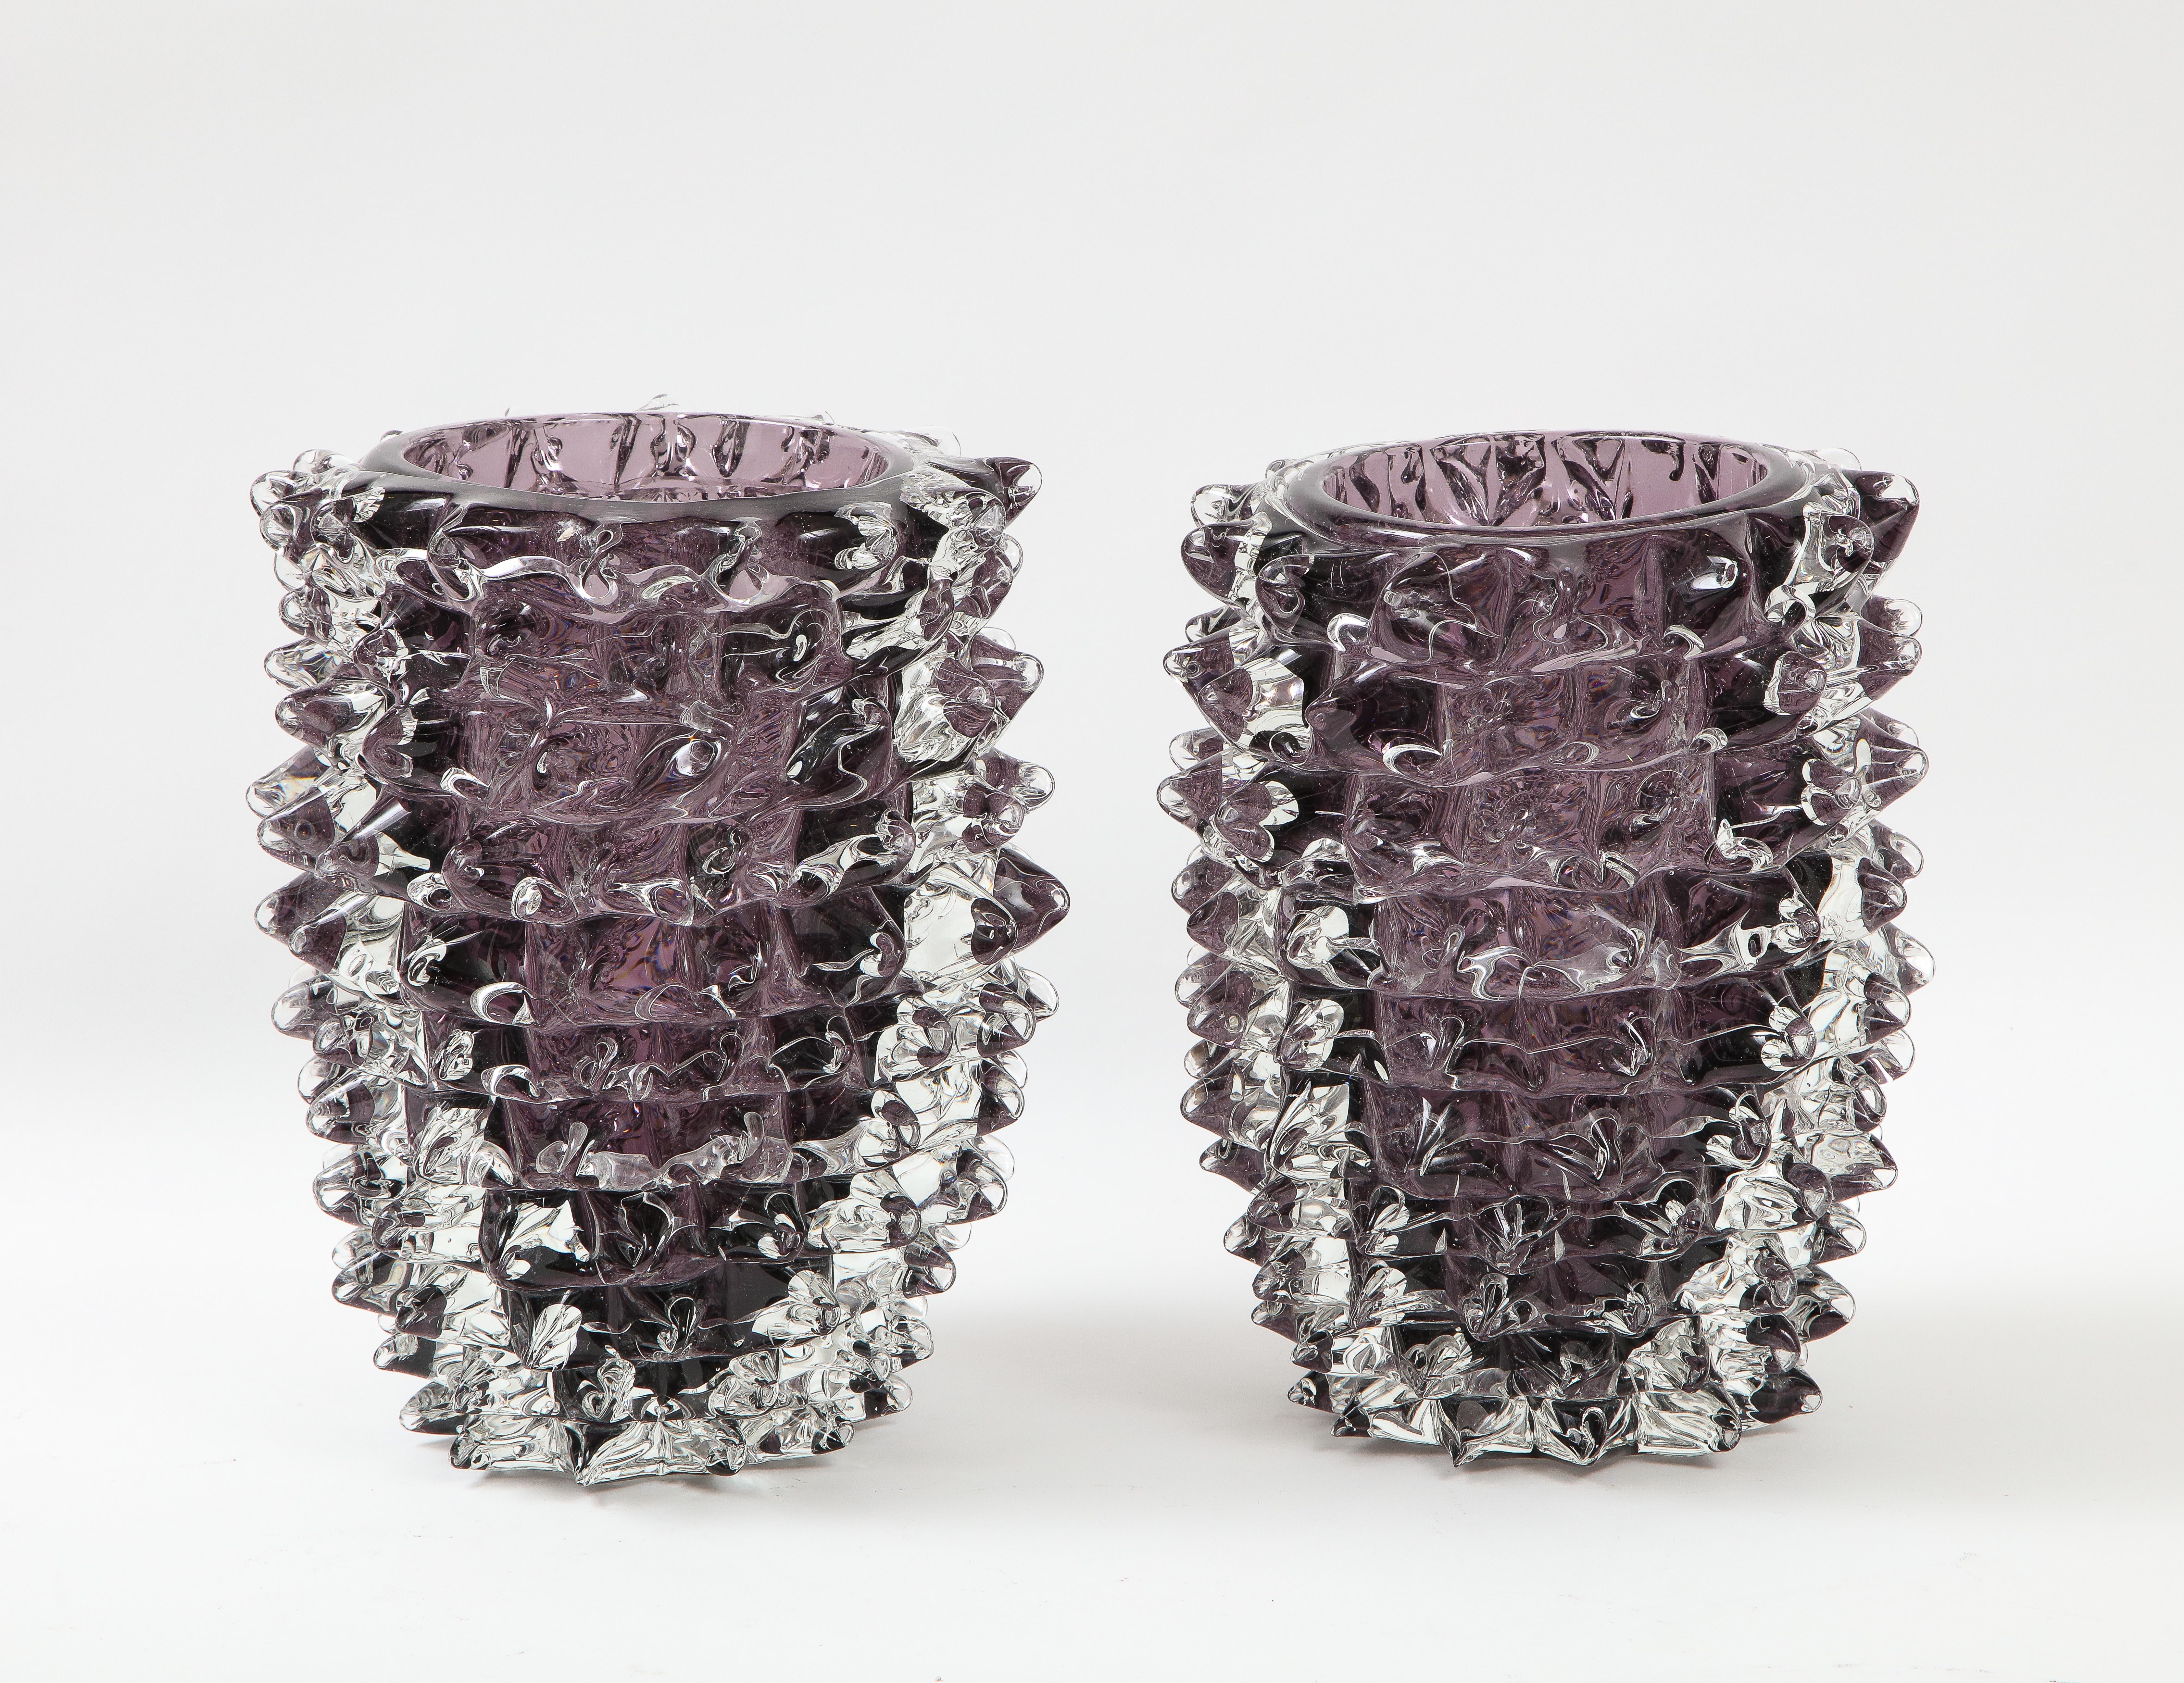 Handgeblasene Vase aus klarem und amethystfarbenem (violettem) Murano-Glas in der ikonischen Art des 